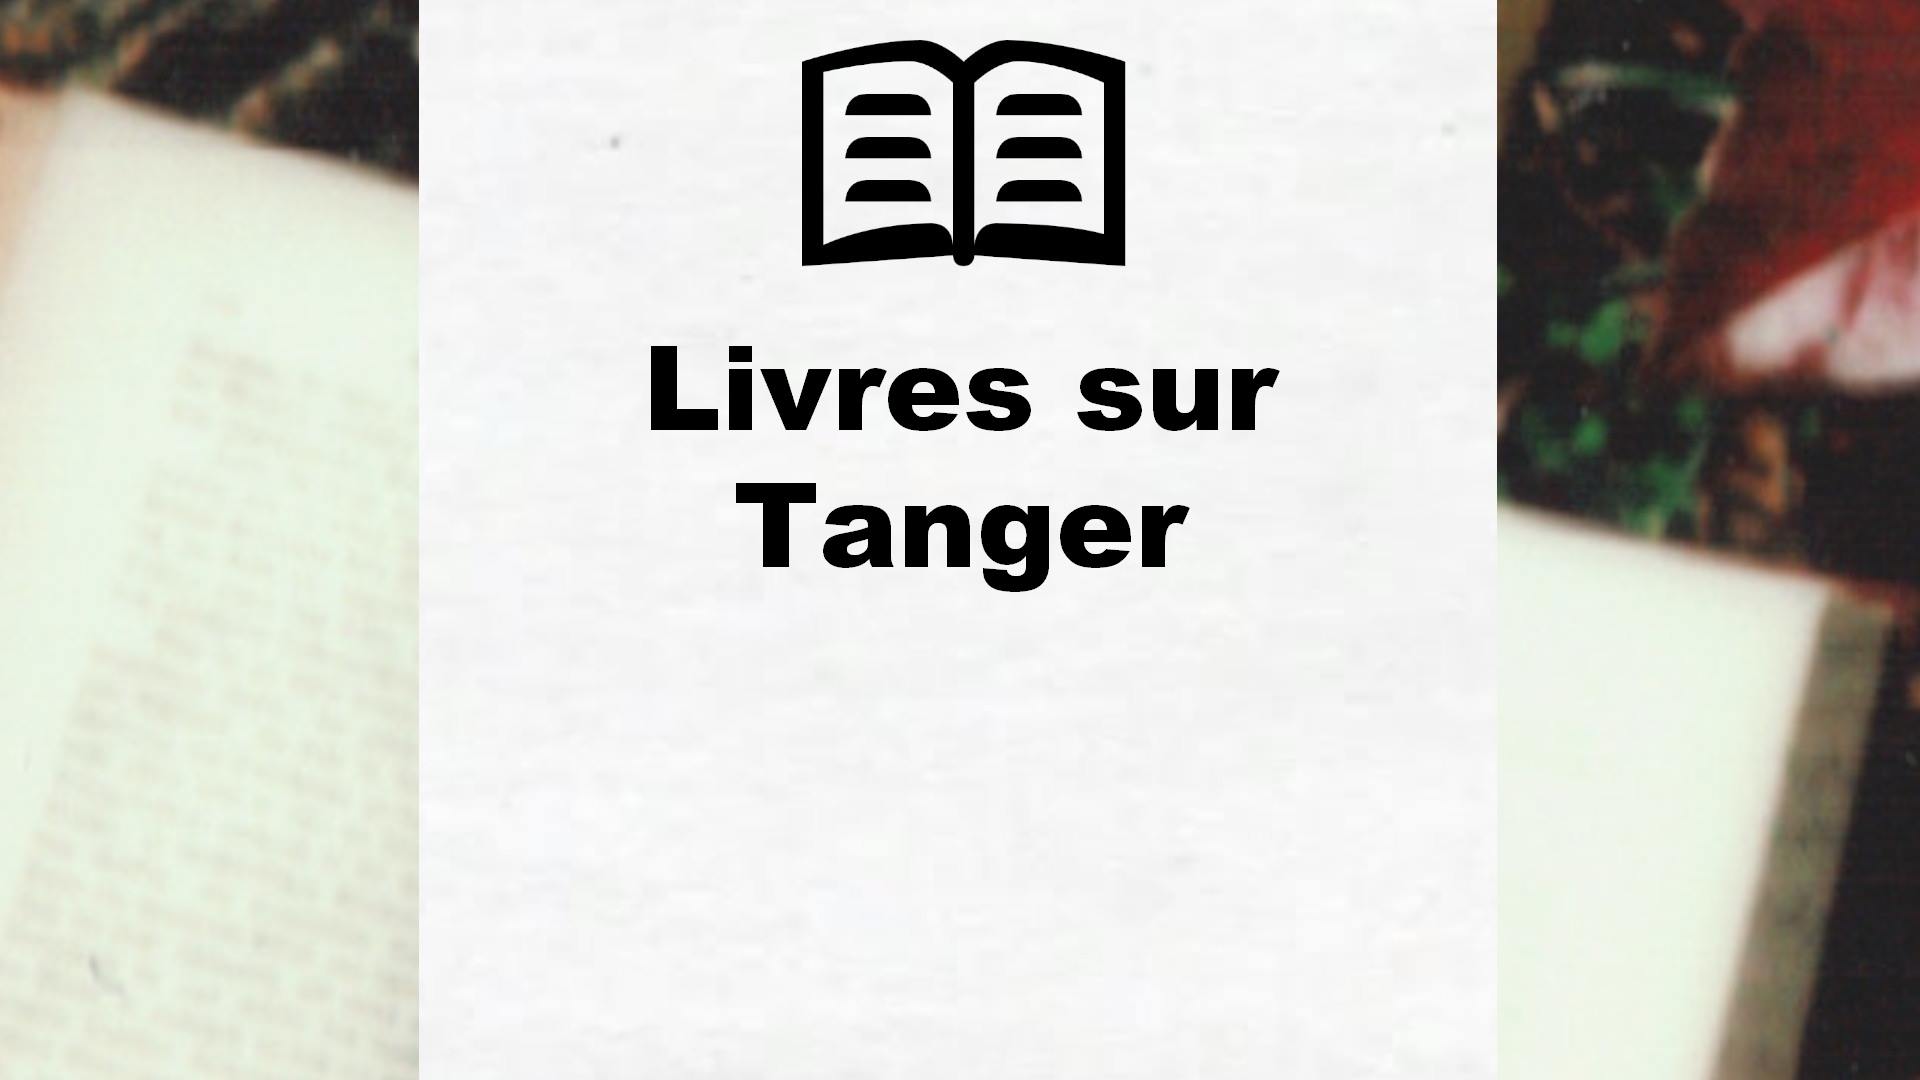 Livres sur Tanger